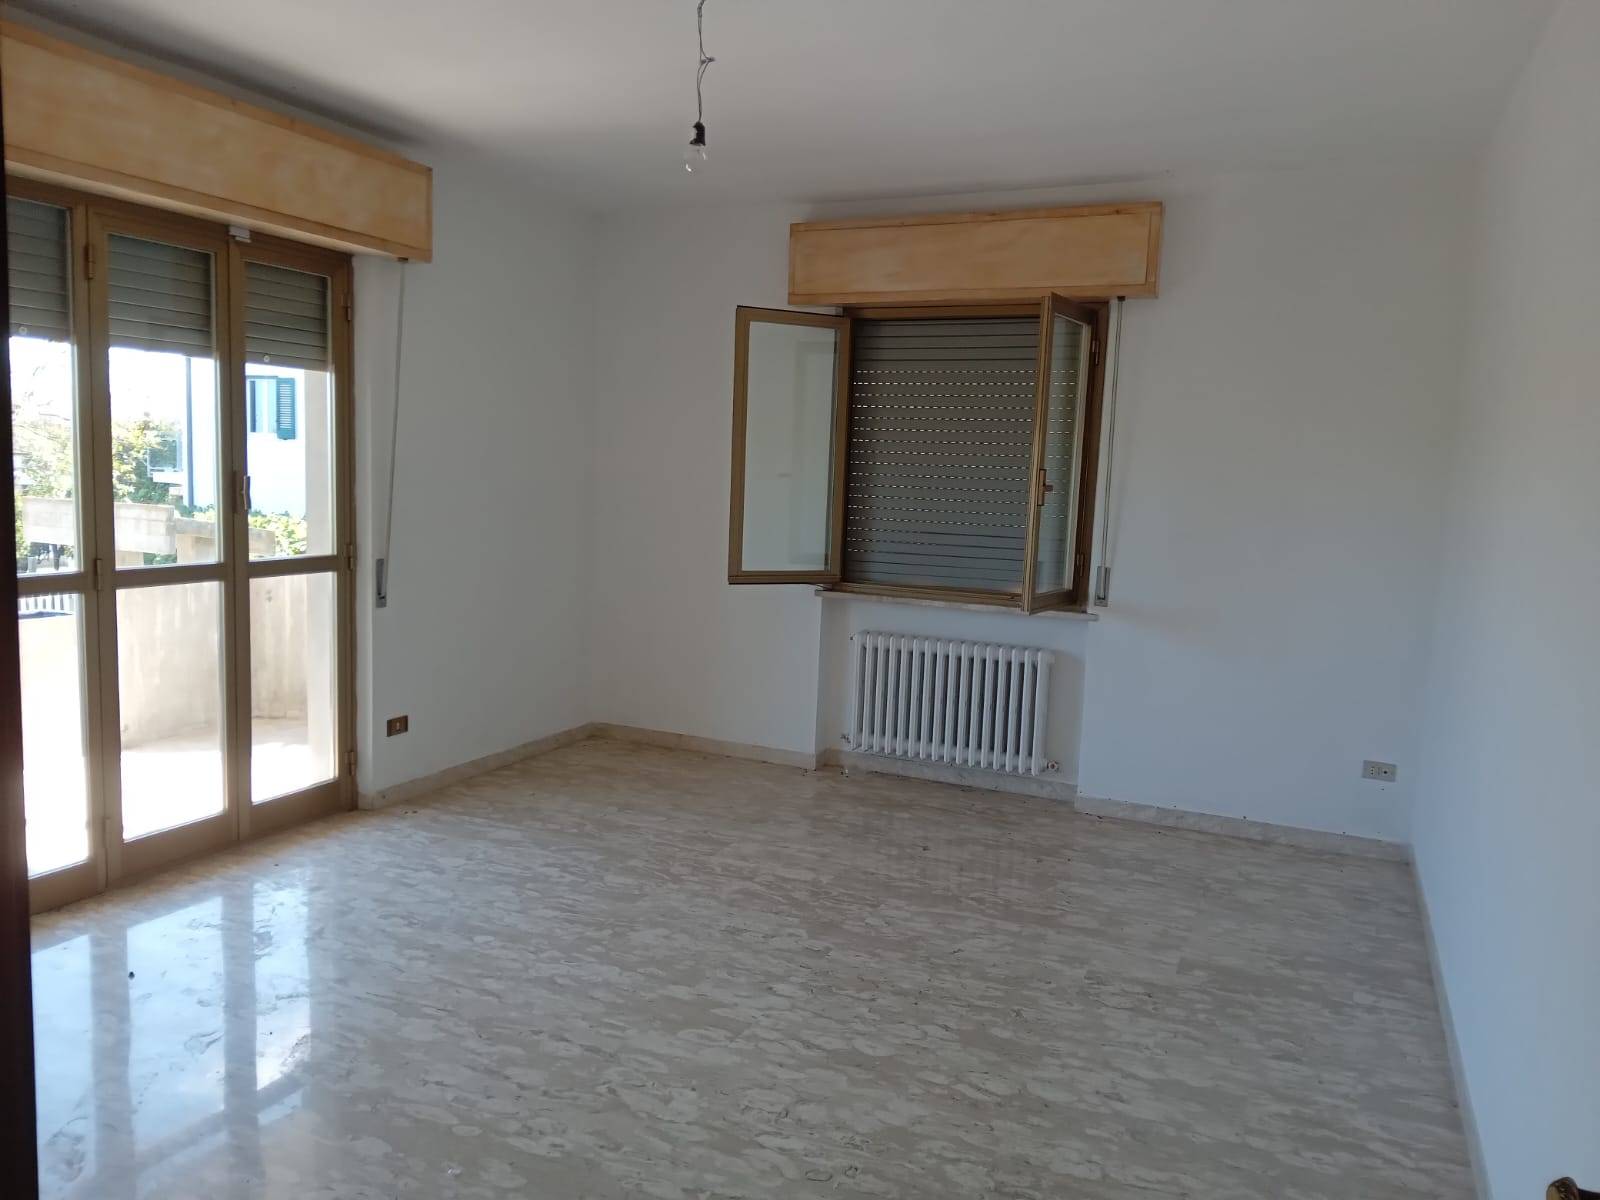 Villa in vendita a Giulianova, 6 locali, prezzo € 220.000 | PortaleAgenzieImmobiliari.it